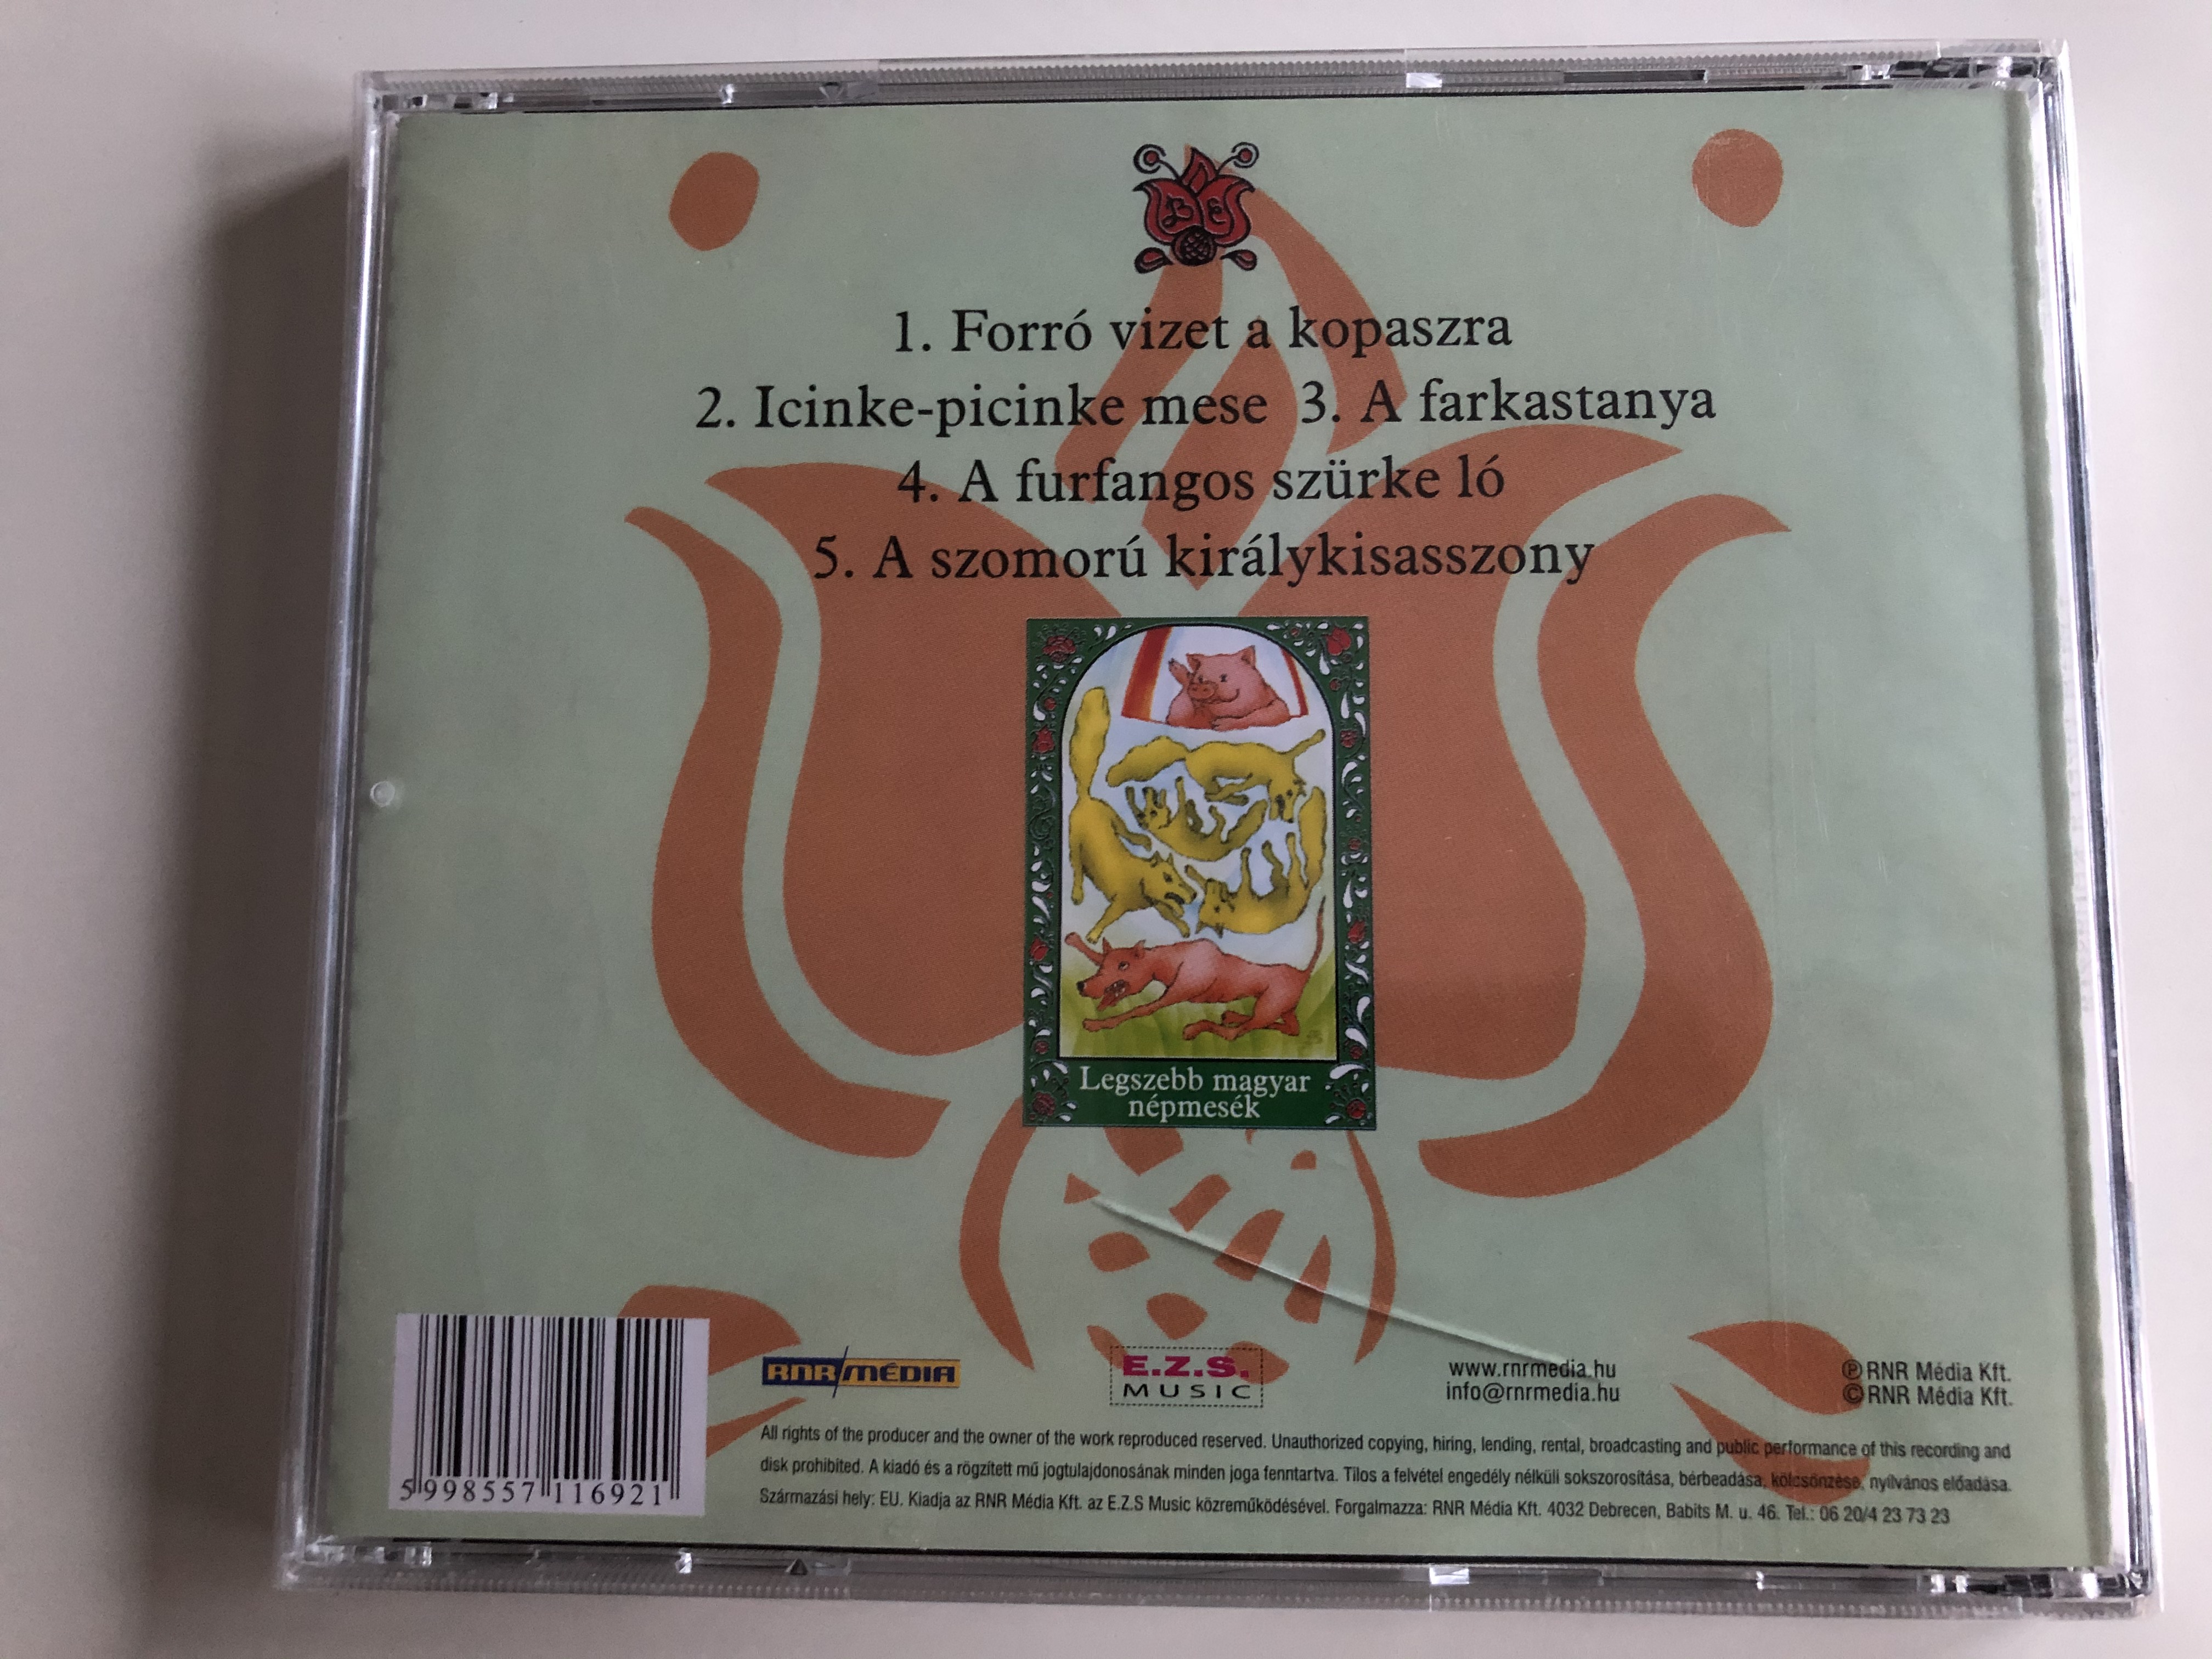 forro-vizet-a-kopaszra-legszebb-magyar-nepmesek-e.z.s.-music-audio-cd-5998557116921-2-.jpg